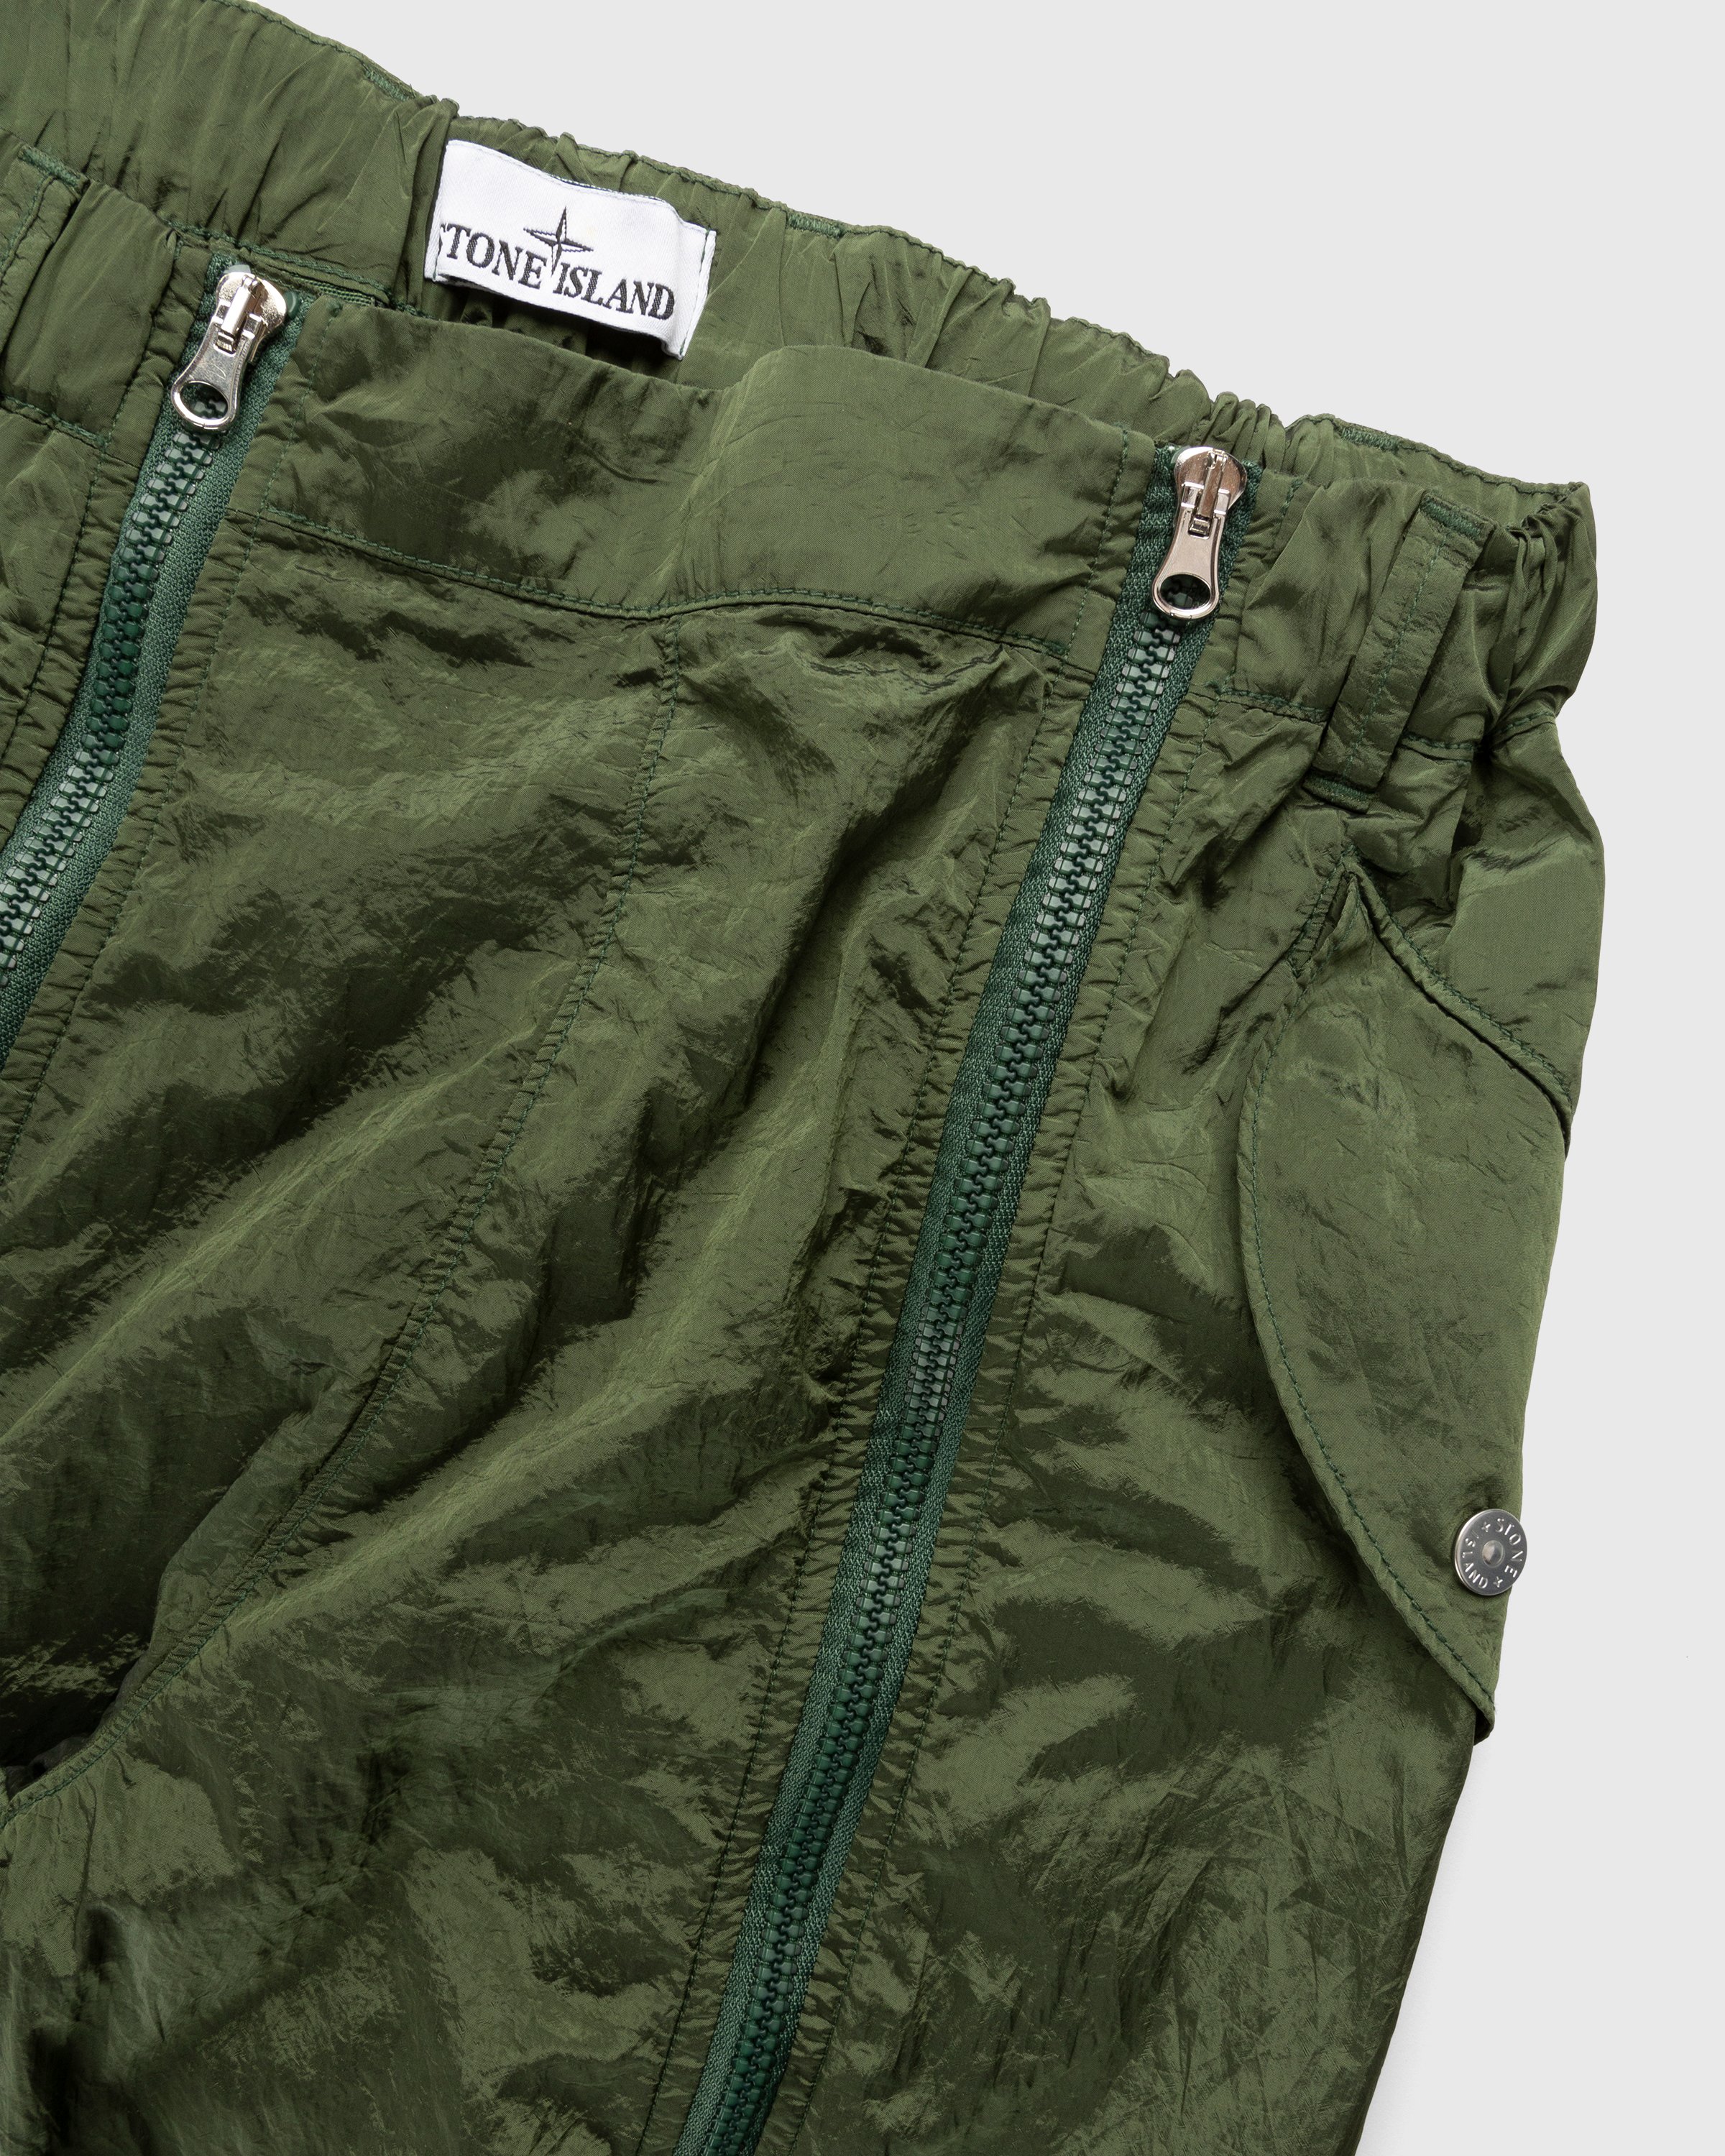 Stone Island - Nylon Metal Cargo Pants Olive - Clothing - Green - Image 3